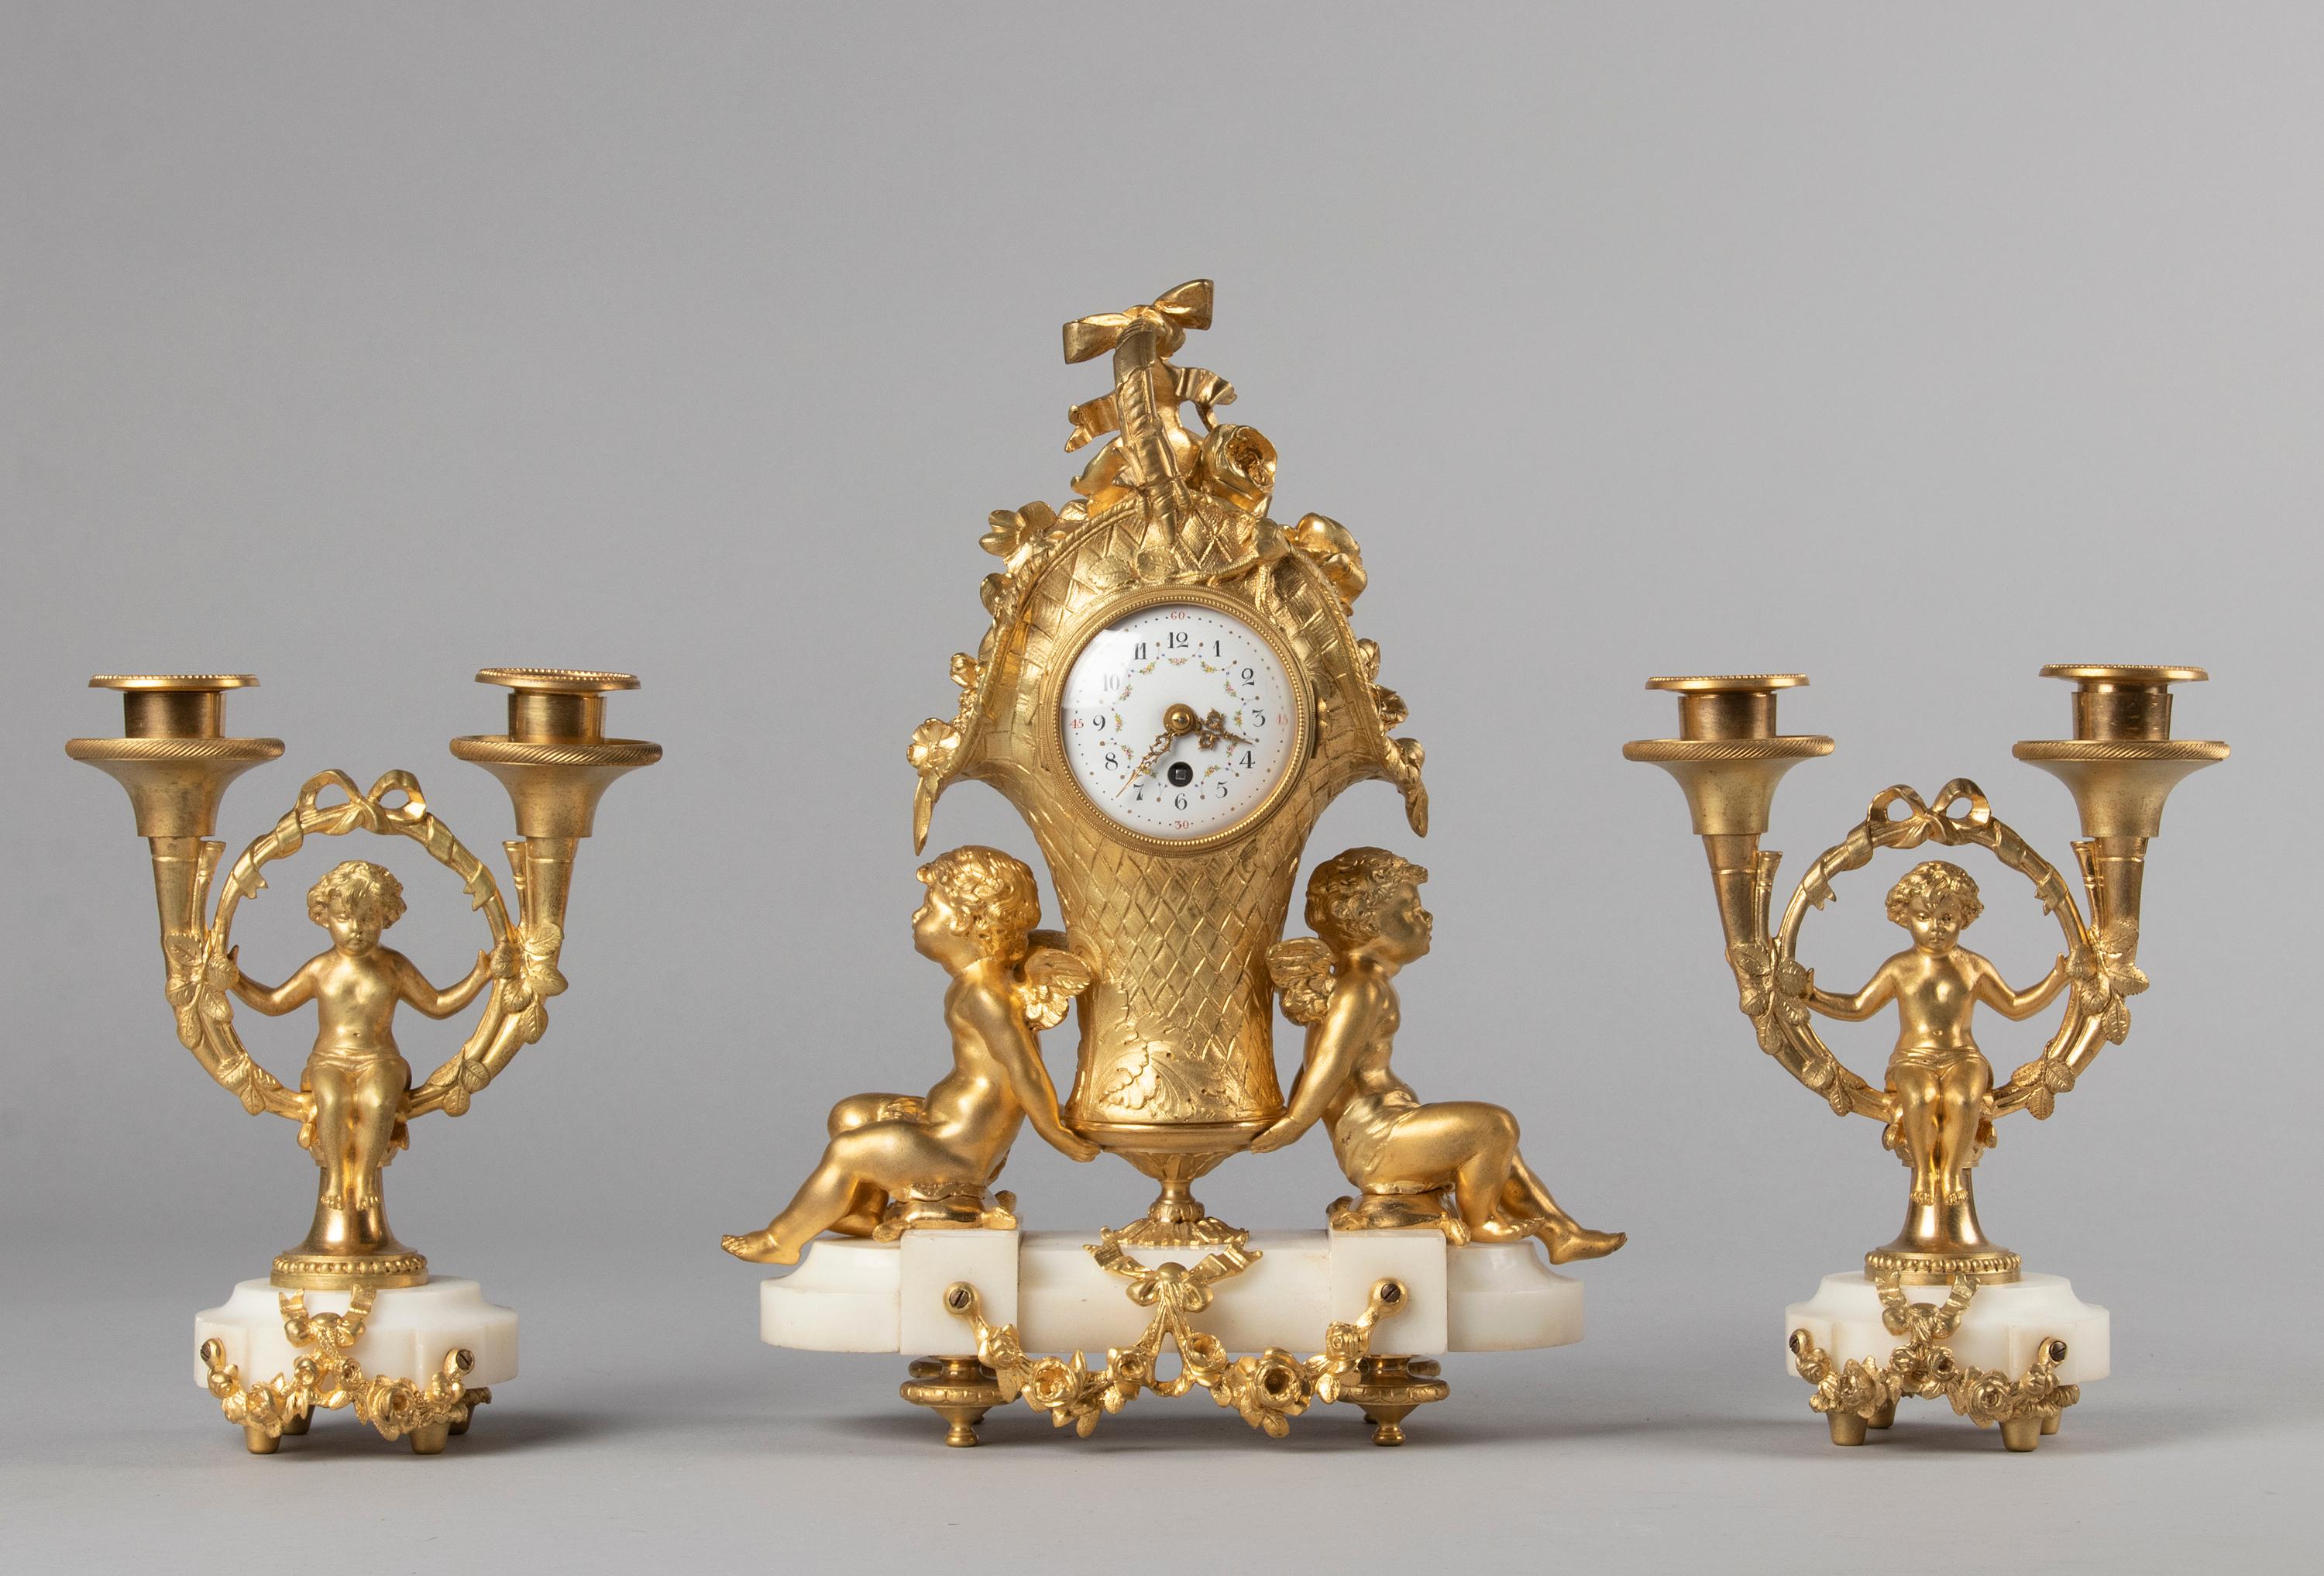 Eine sehr schöne figurale Kaminuhr im Louis XVI-Stil mit passendem flankierenden Kandelaber. Die Uhr ist aus Bronze gegossen und hat ein Ormolu-Finish, das Zifferblatt ist aus emailliertem Eisen. Auf einem Sockel aus weißem Marmor ruhend. Reichlich